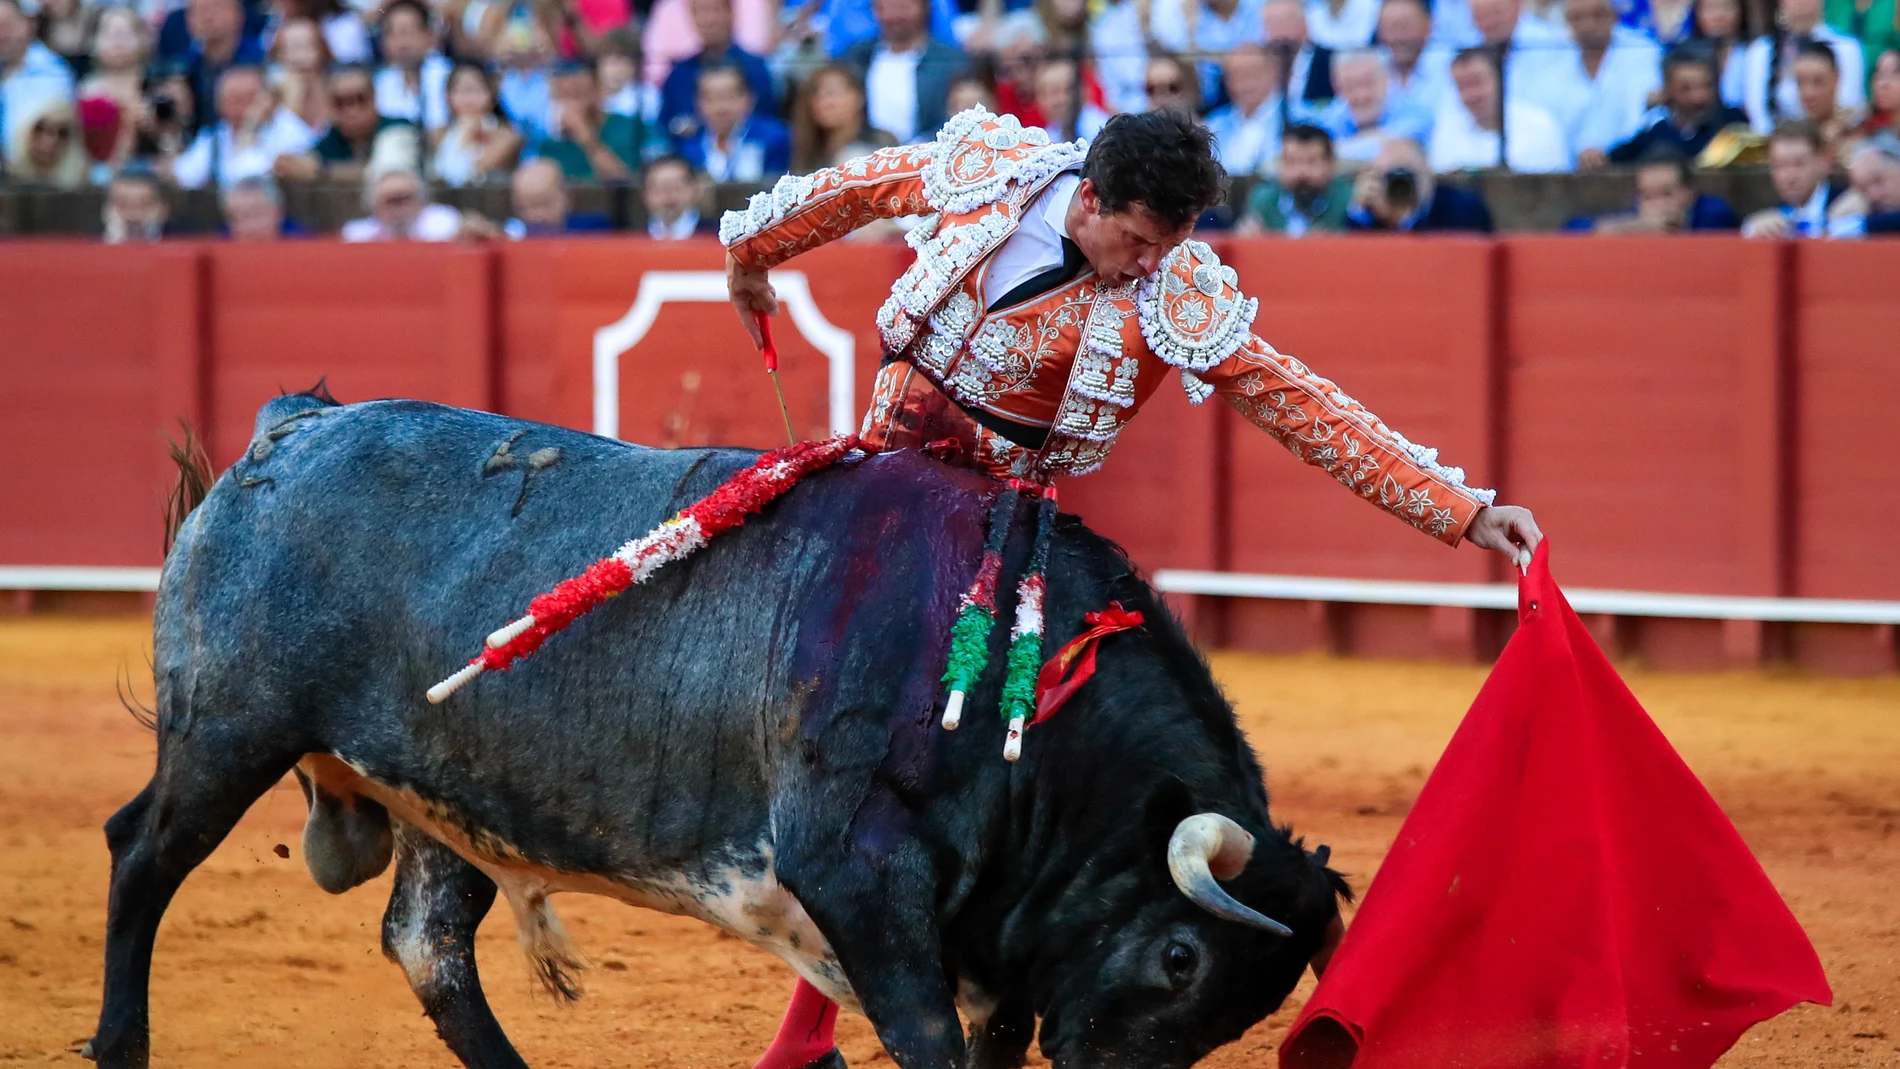 El diestro Daniel Luque durante la faena a su segundo toro, de la ganadería de La Quinta, al que cortó una oreja en la decimocuarta corrida de abono de la Feria de Abril esta tarde en la Real Maestranza de Sevilla.